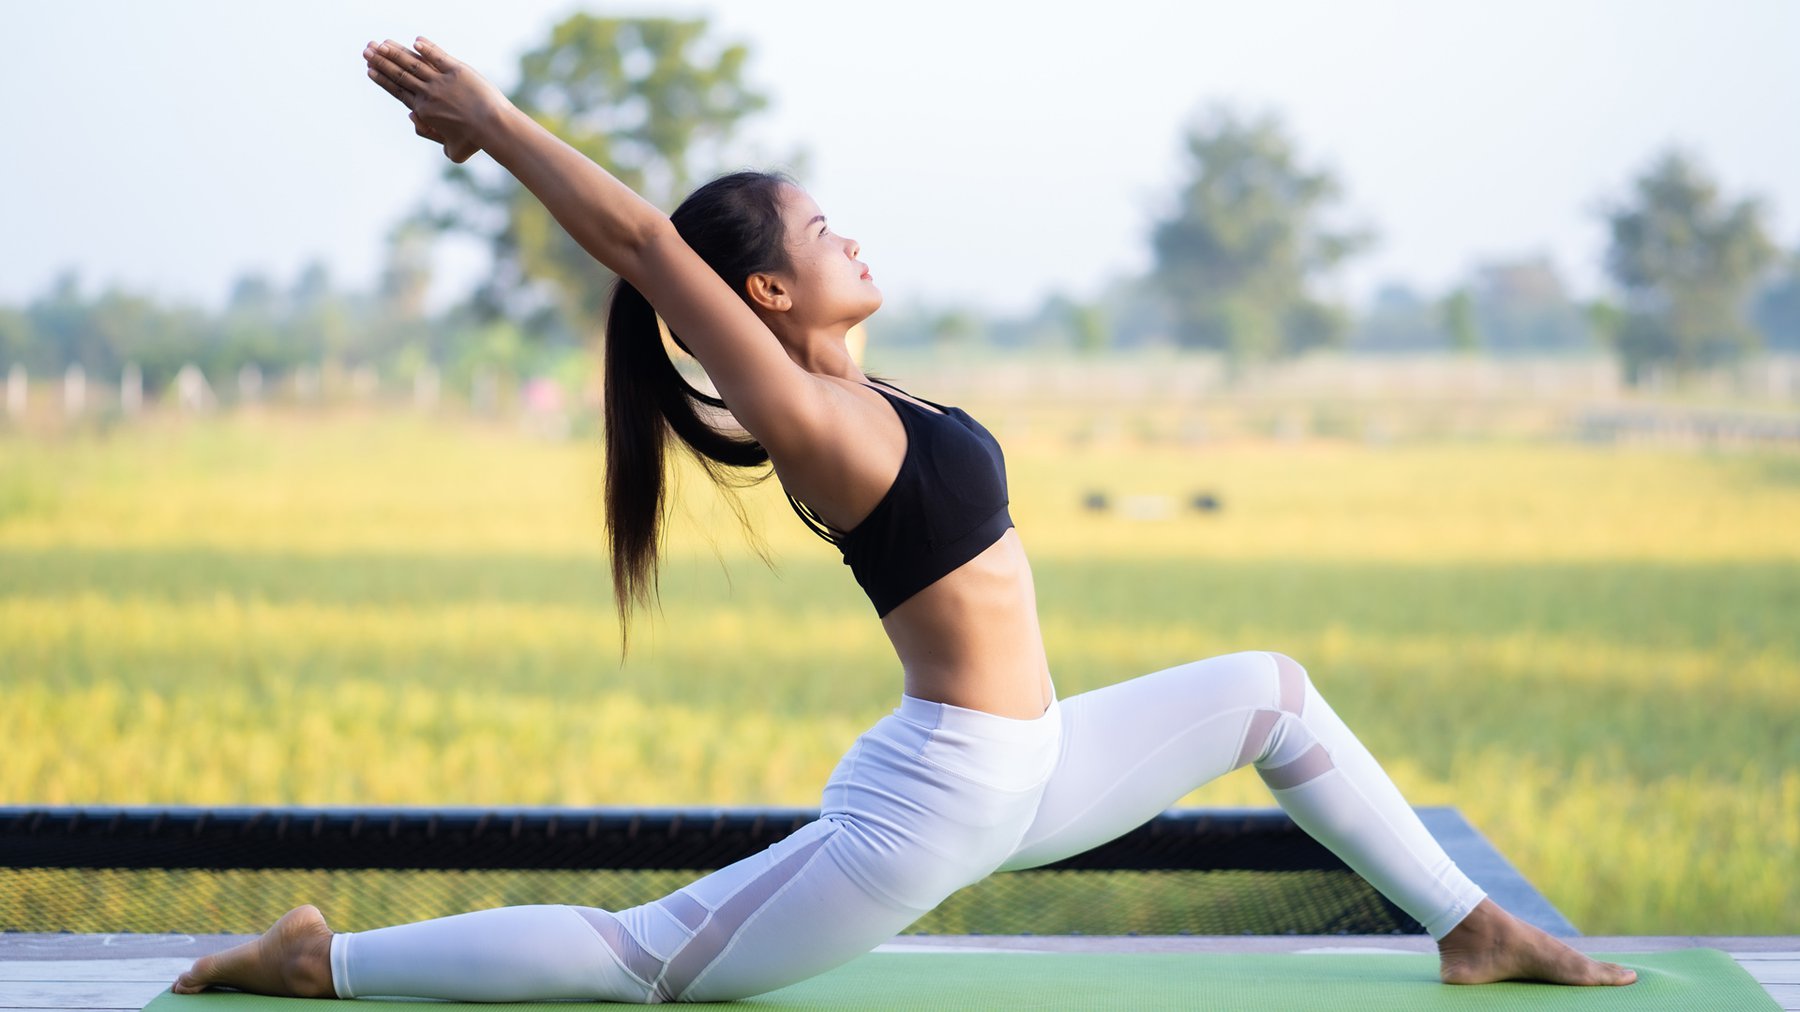 Yoga và Cân Nặng: Sự Kết Hợp Tốt Cho Sức Khỏe và Sức Đẹp